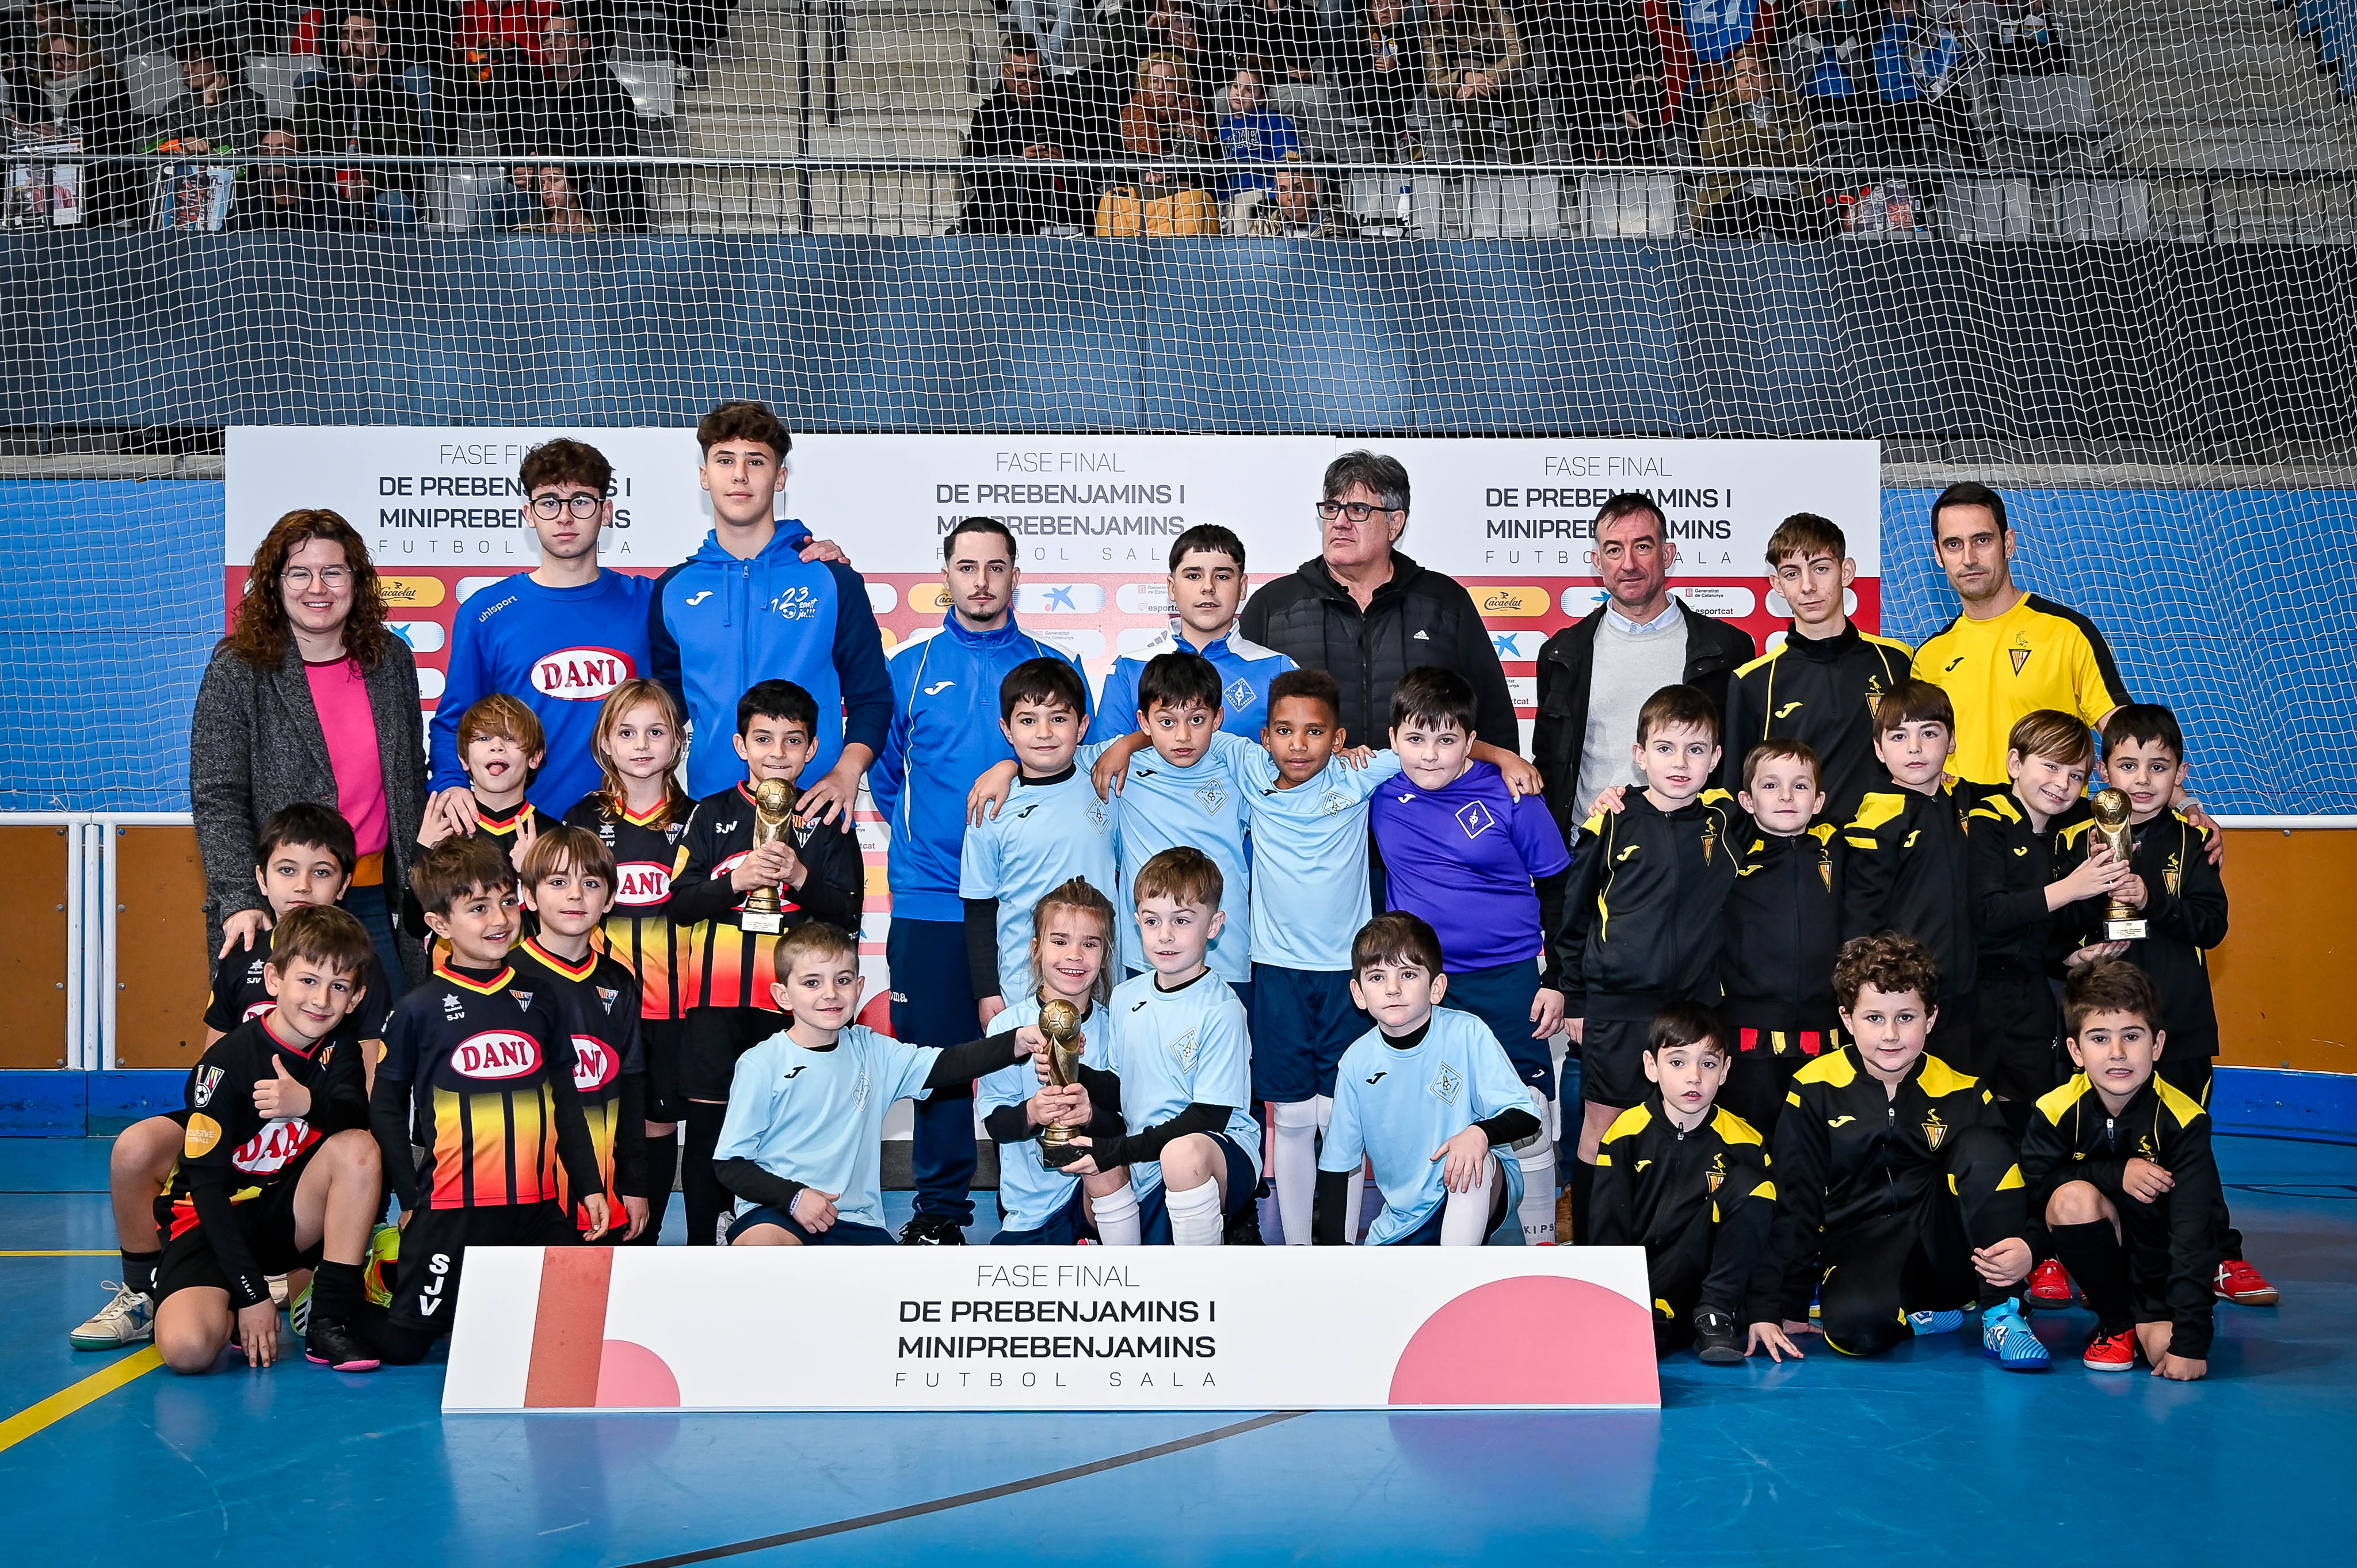 GRUP H - PREBENJAMINS: Futsal Tordera Club 'A', FS Sant Vicenç dels Horts 'A' i St Joan de Vilassar FS 'A'